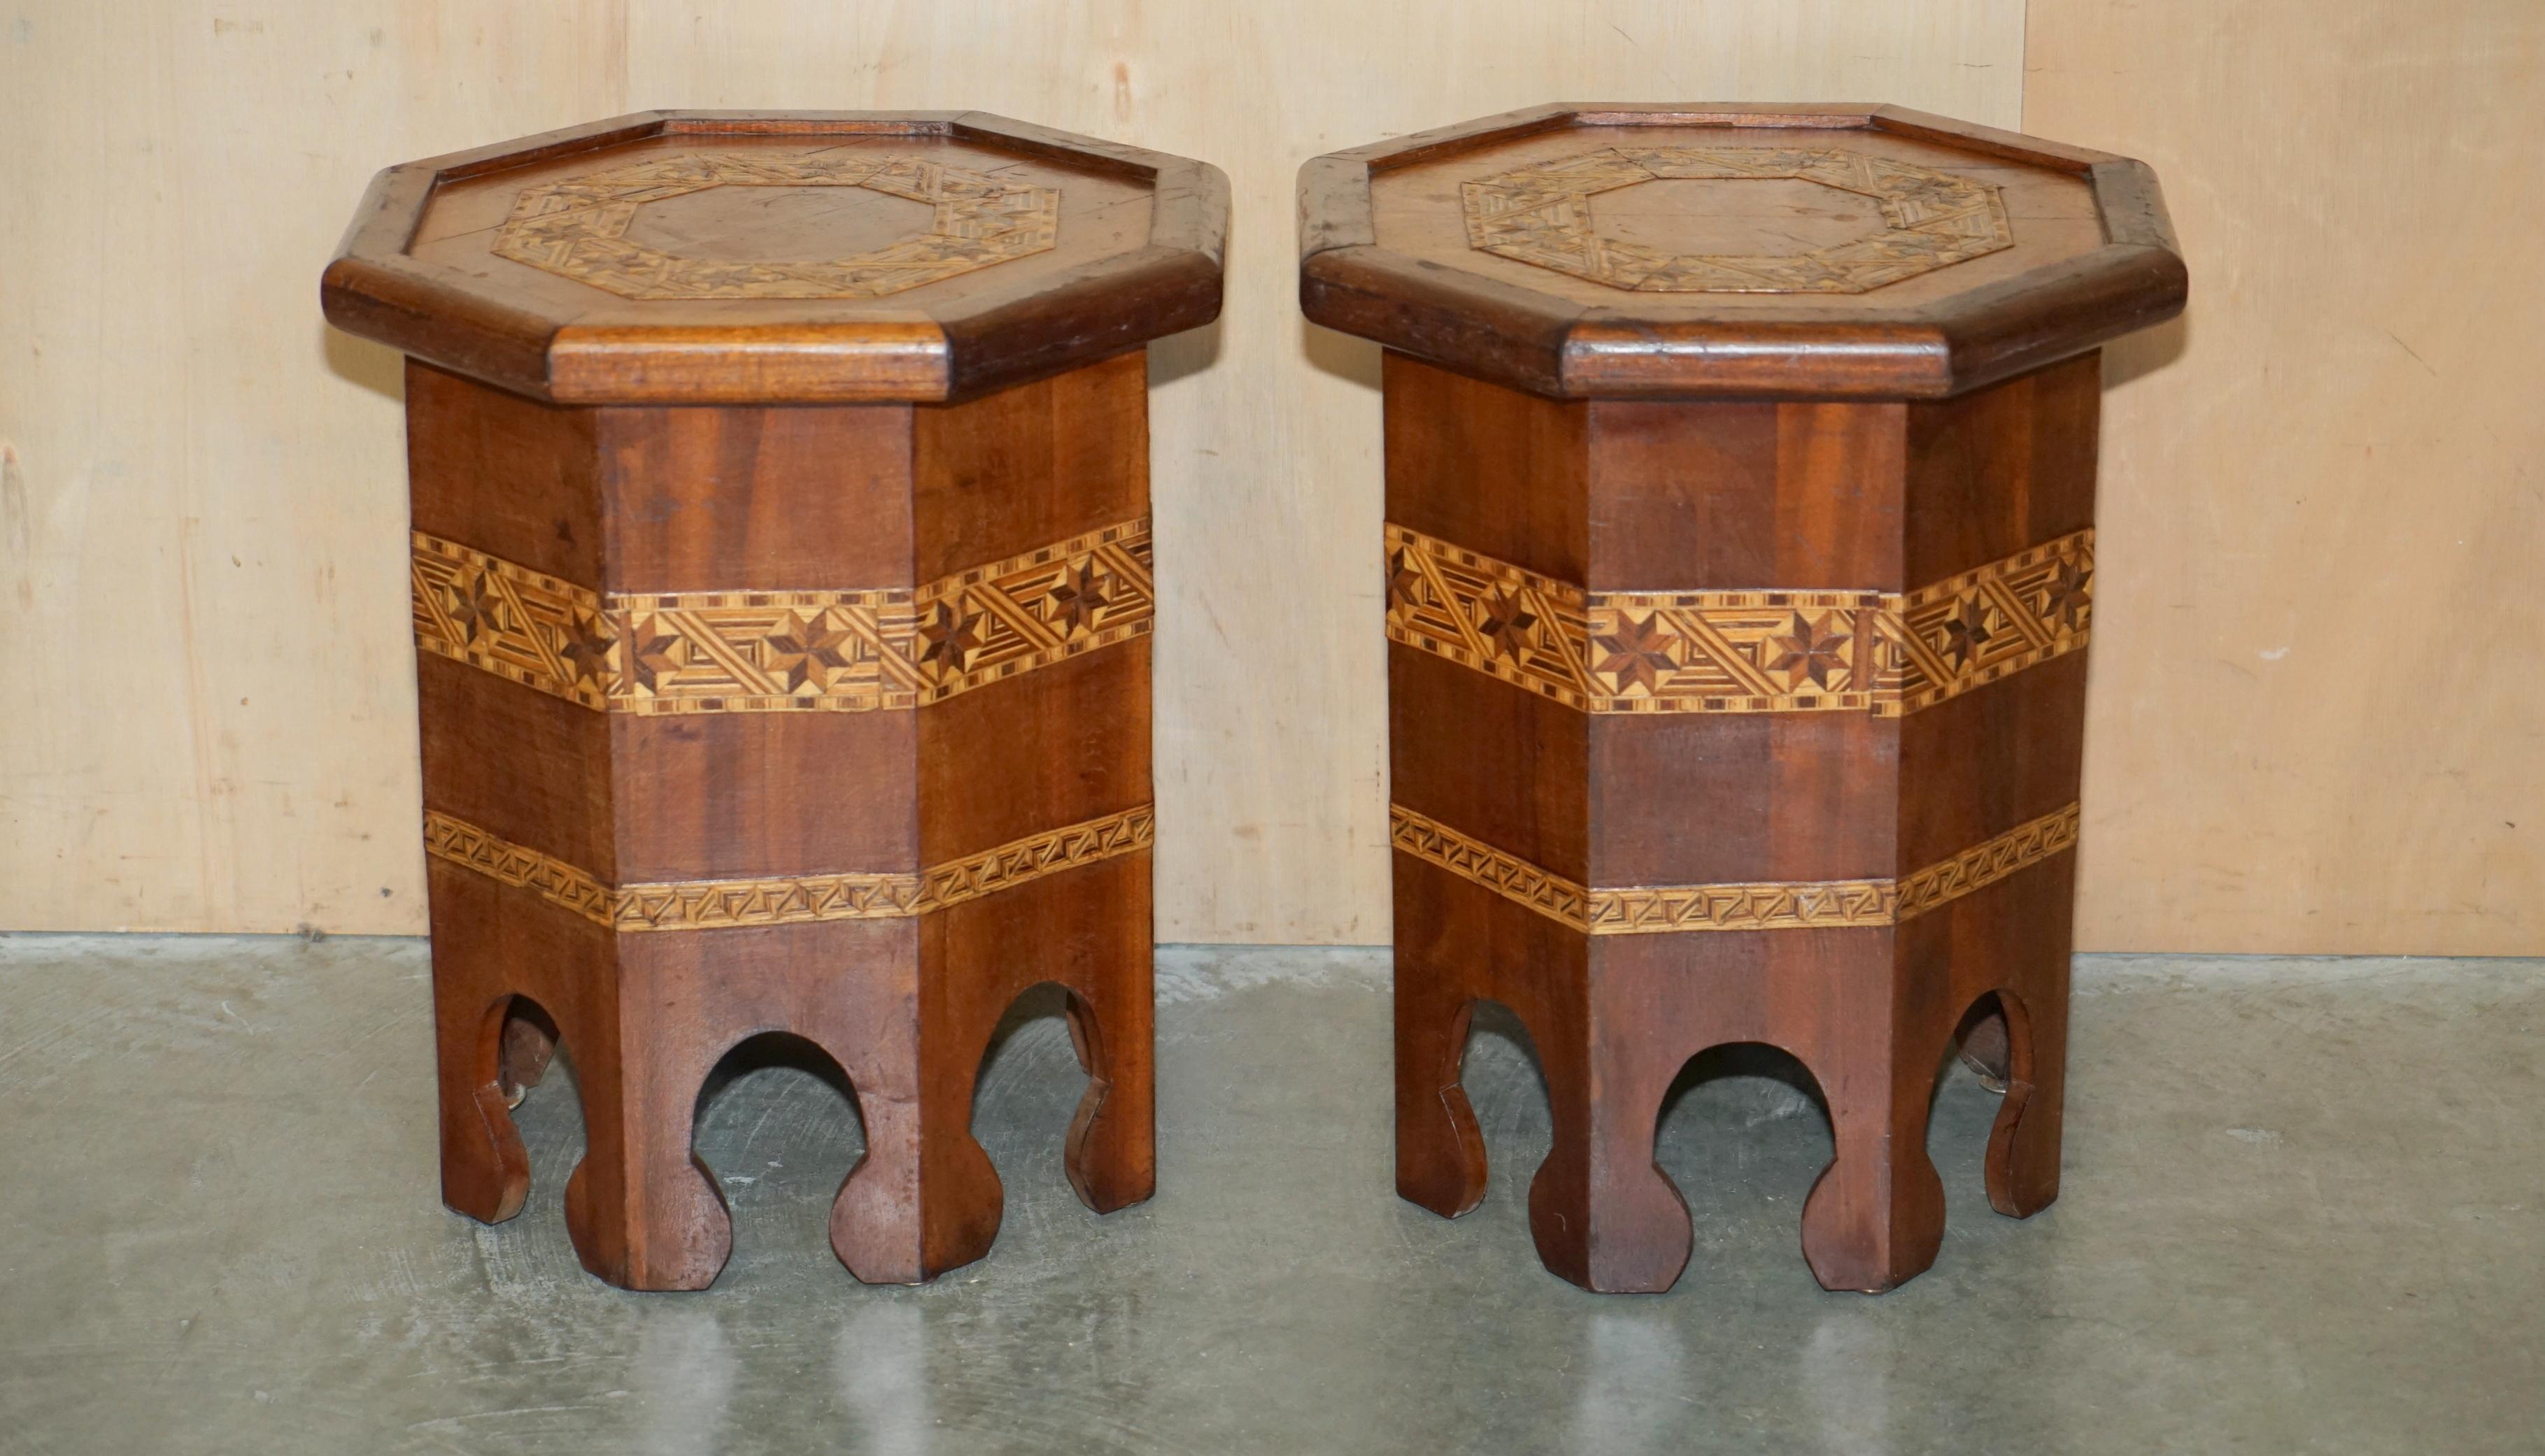 Royal House Antiques

The House of Antiques a le plaisir de proposer à la vente cette paire de tables d'appoint marocaines à incrustations, vendues au détail par Liberty's London. 

Veuillez noter que les frais de livraison indiqués ne sont qu'un